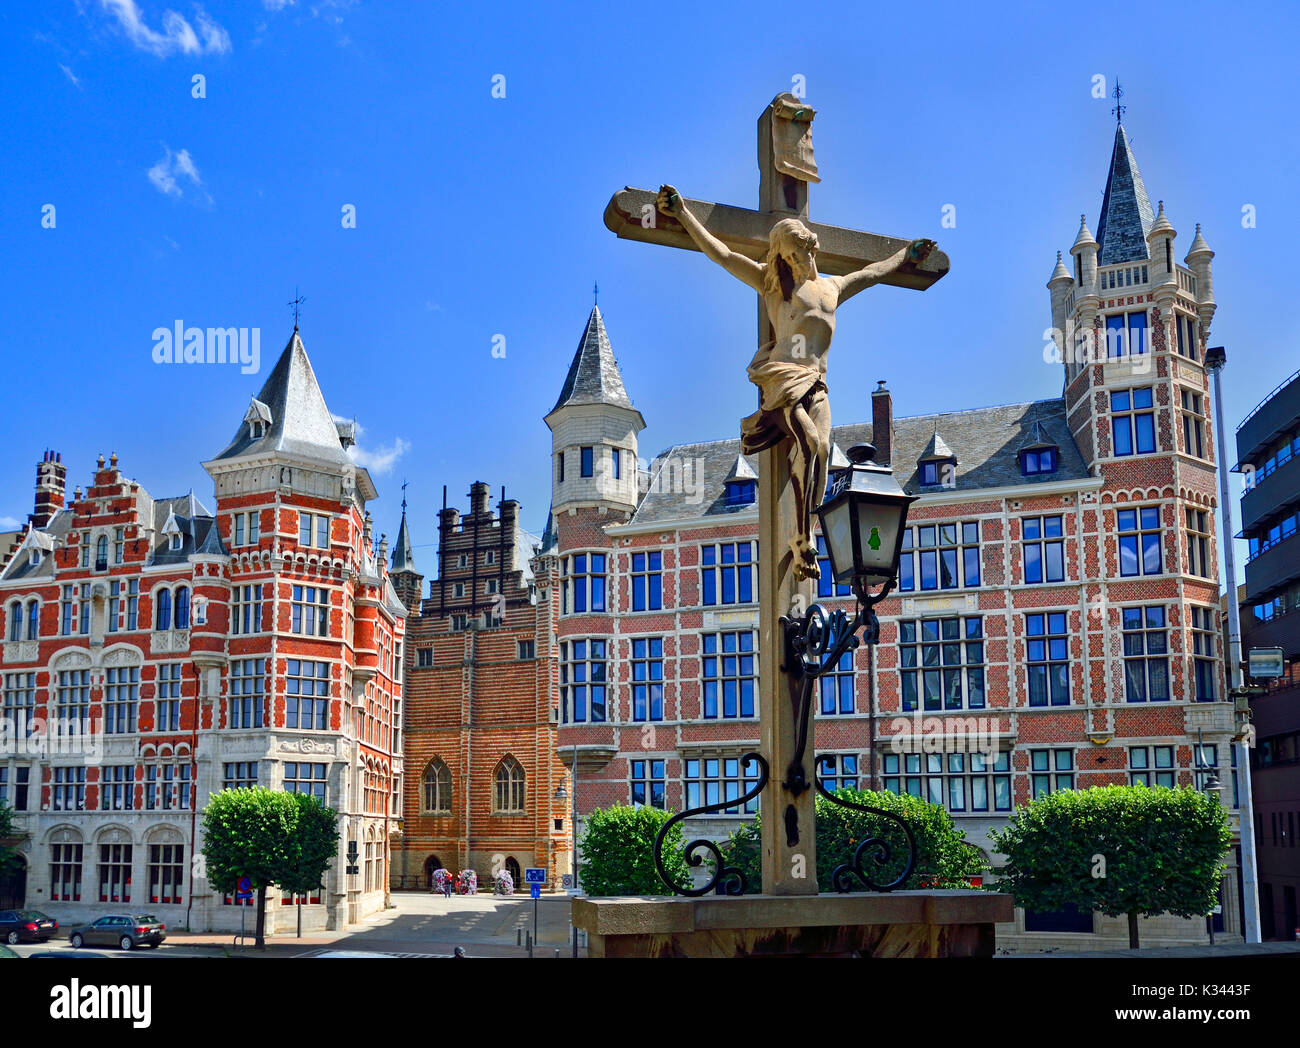 Anvers, Belgique. Vue de Het Steen - forteresse médiévale par la rivière. Crucifix en pierre et des bâtiments sur Jordaenskaai Banque D'Images